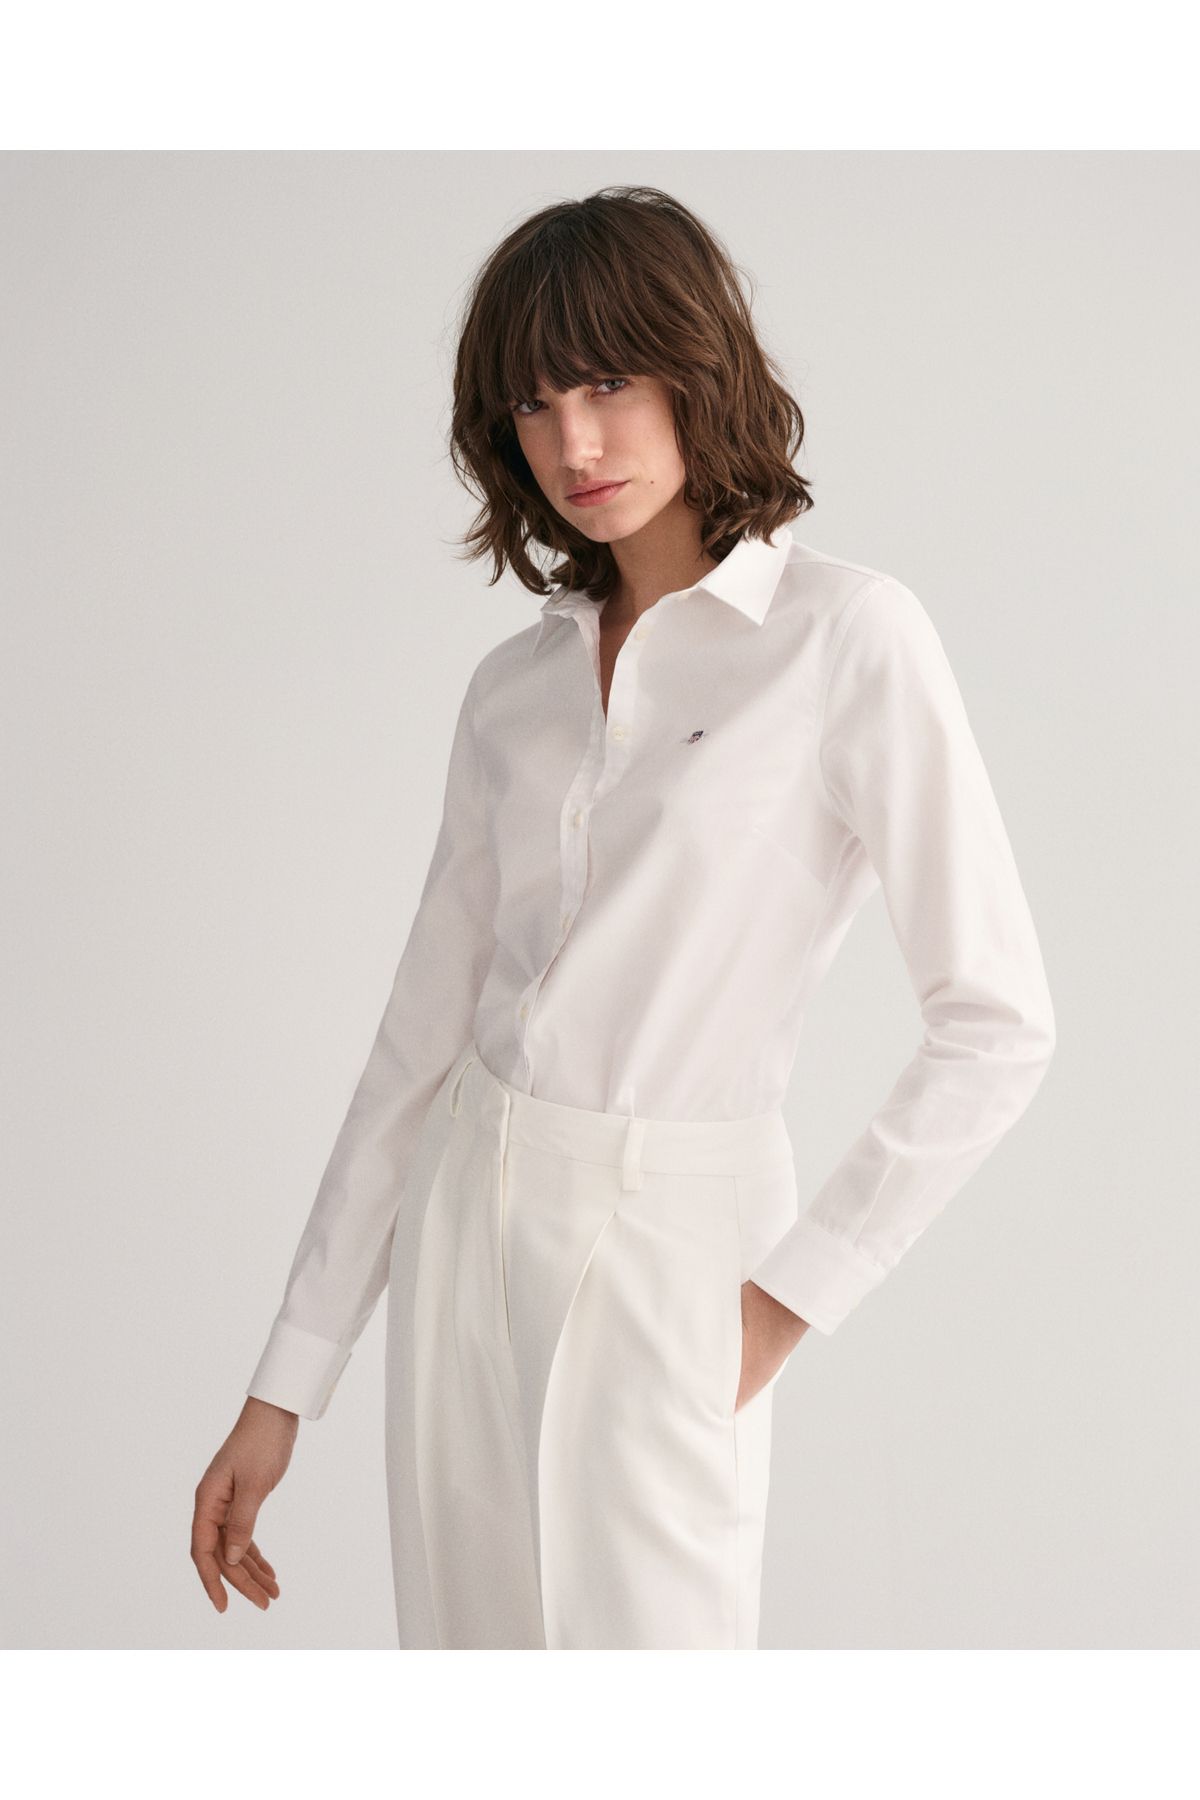 Gant Kadın Beyaz Slim Fit Klasik Yaka Oxford Gömlek